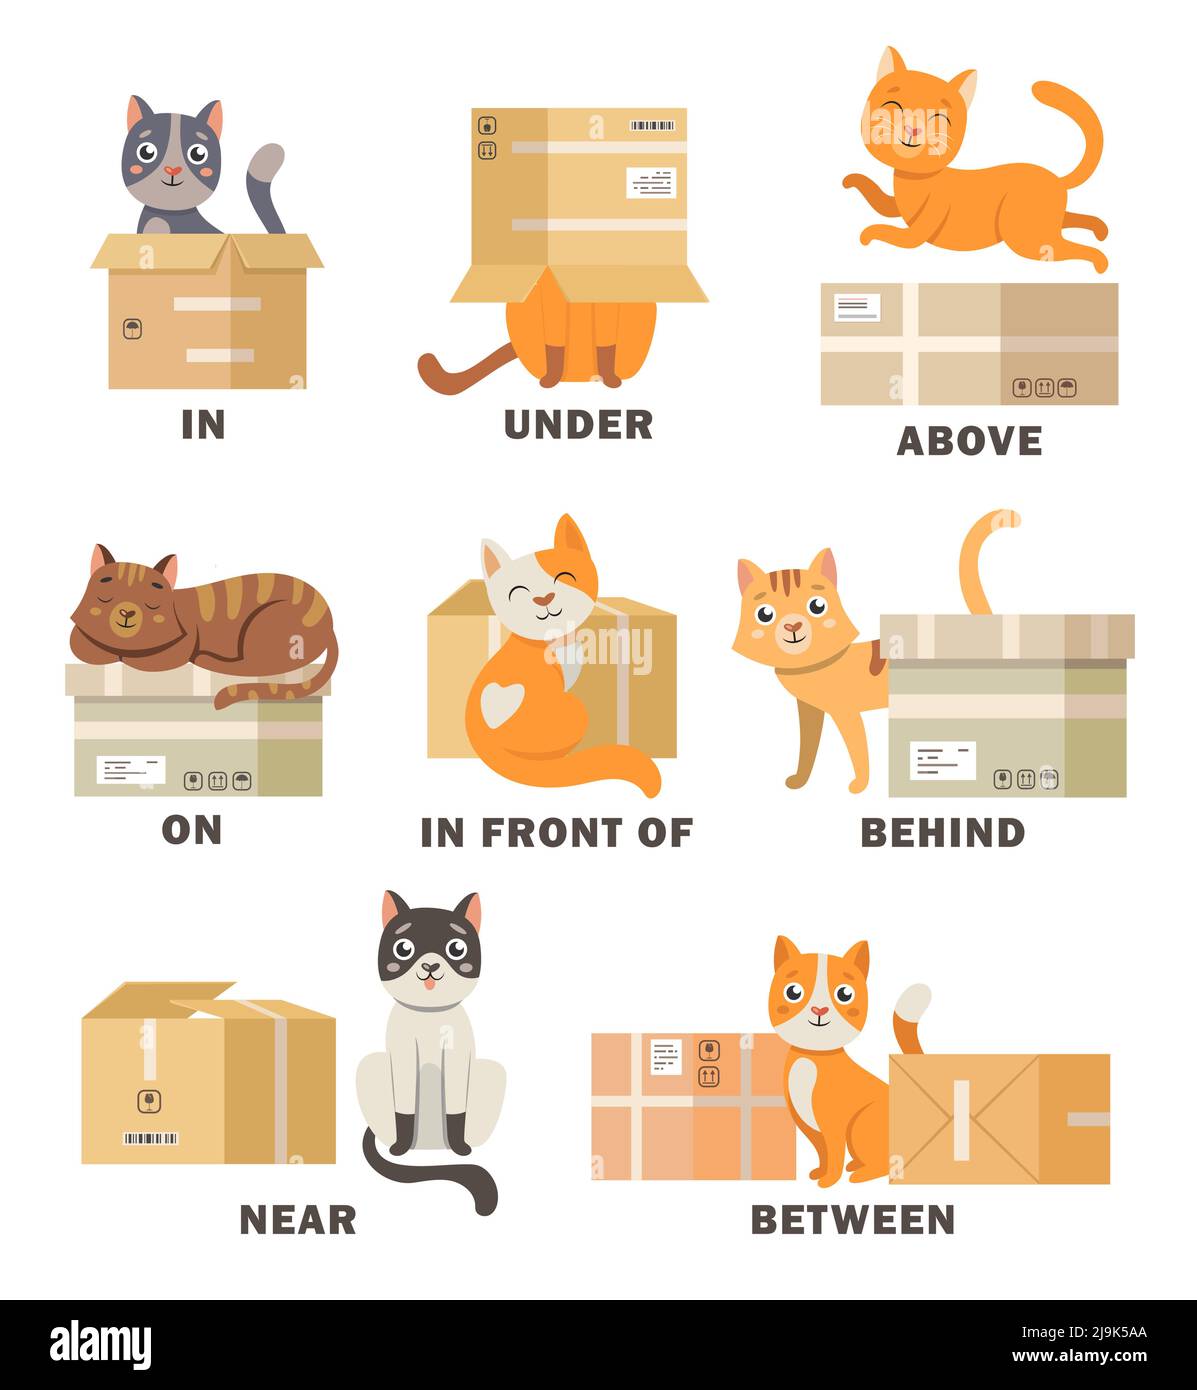 Katze in verschiedenen Posen mit Box Cartoon Illustration Set. Visuelle Darstellung der englischen Präposition des Ortes für Kinder. Haustier oben, hinten, betwe Stock Vektor